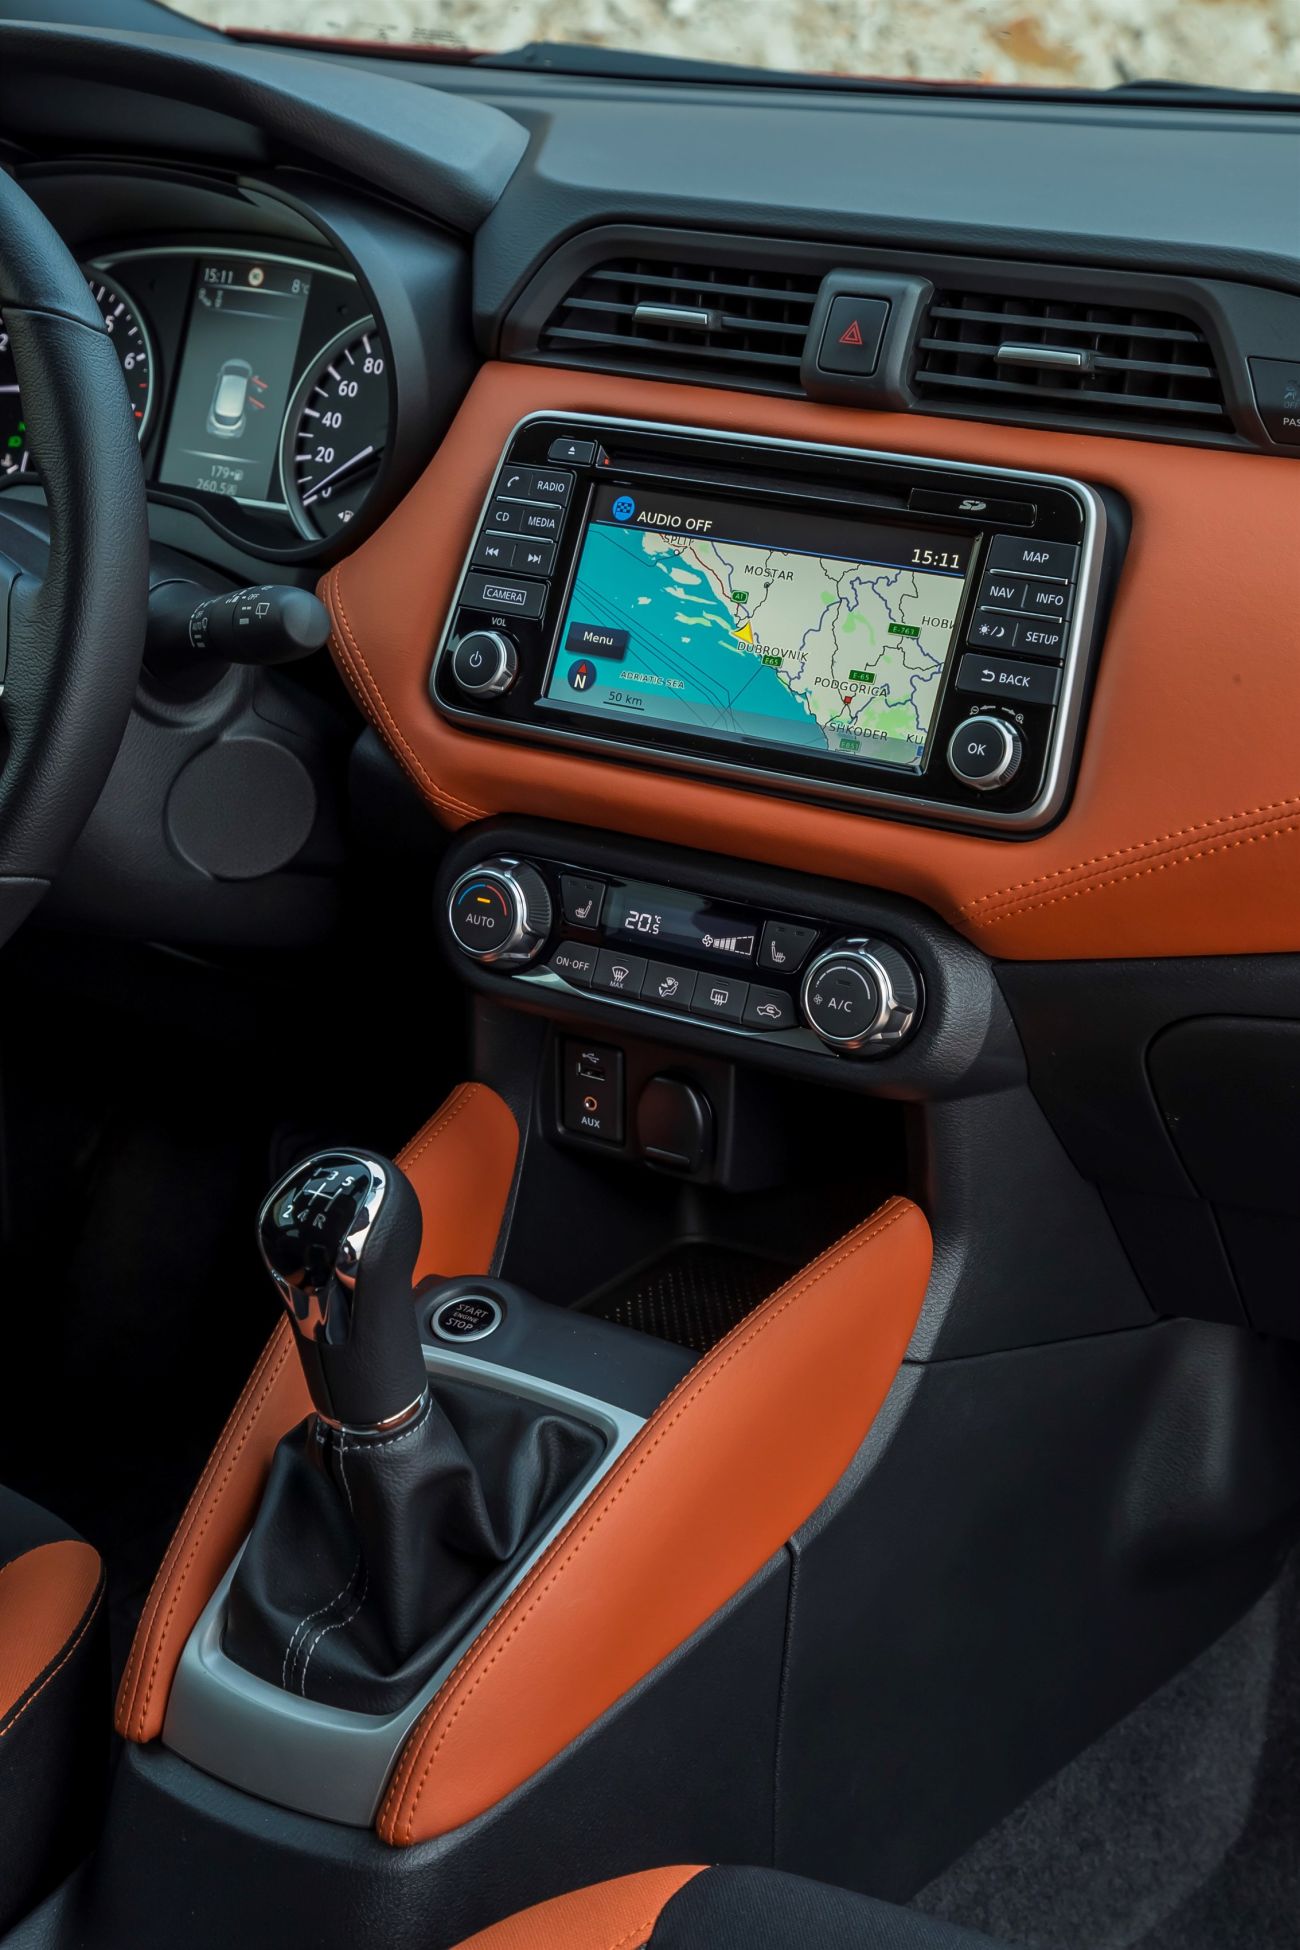 All-New Nissan Micra – Energy Orange